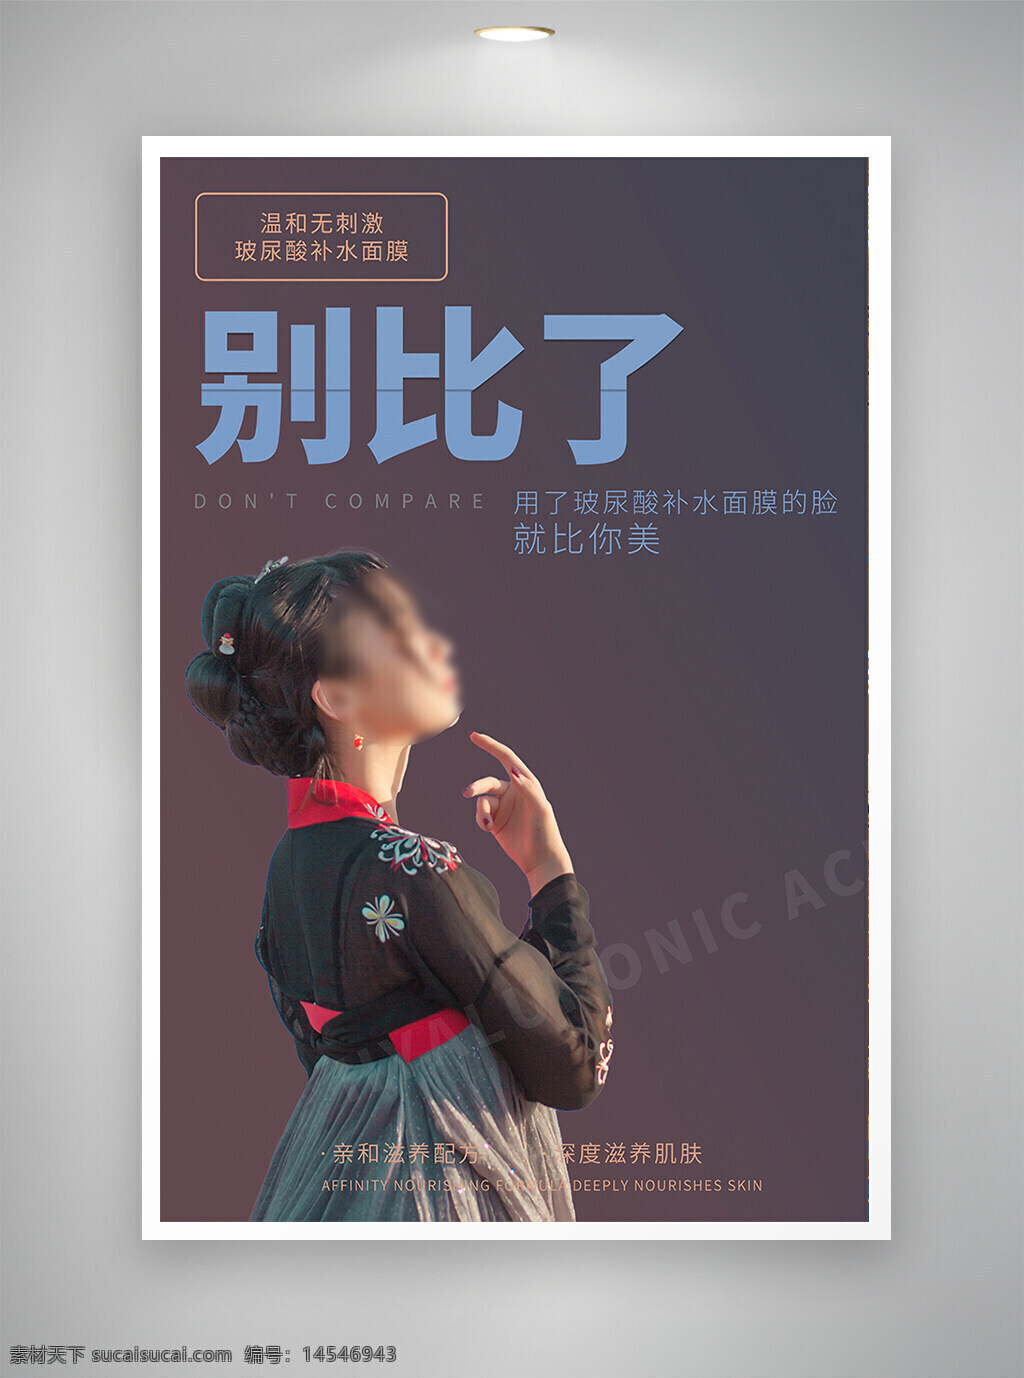 中国风海报 古风海报 促销海报 比价海报 节日海报